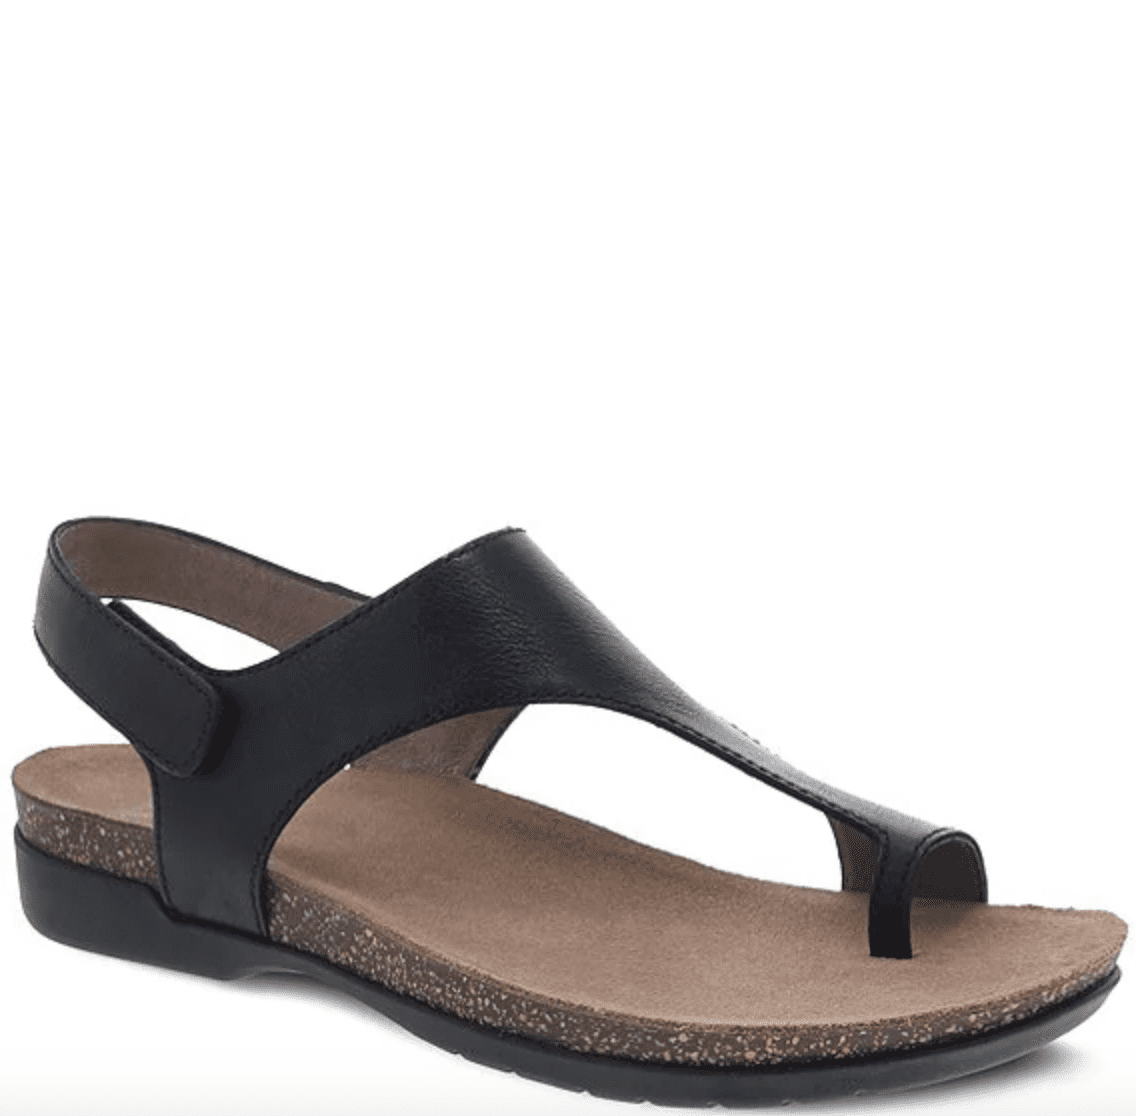 Dansko Product Video Dansko Reece Leather Sandals